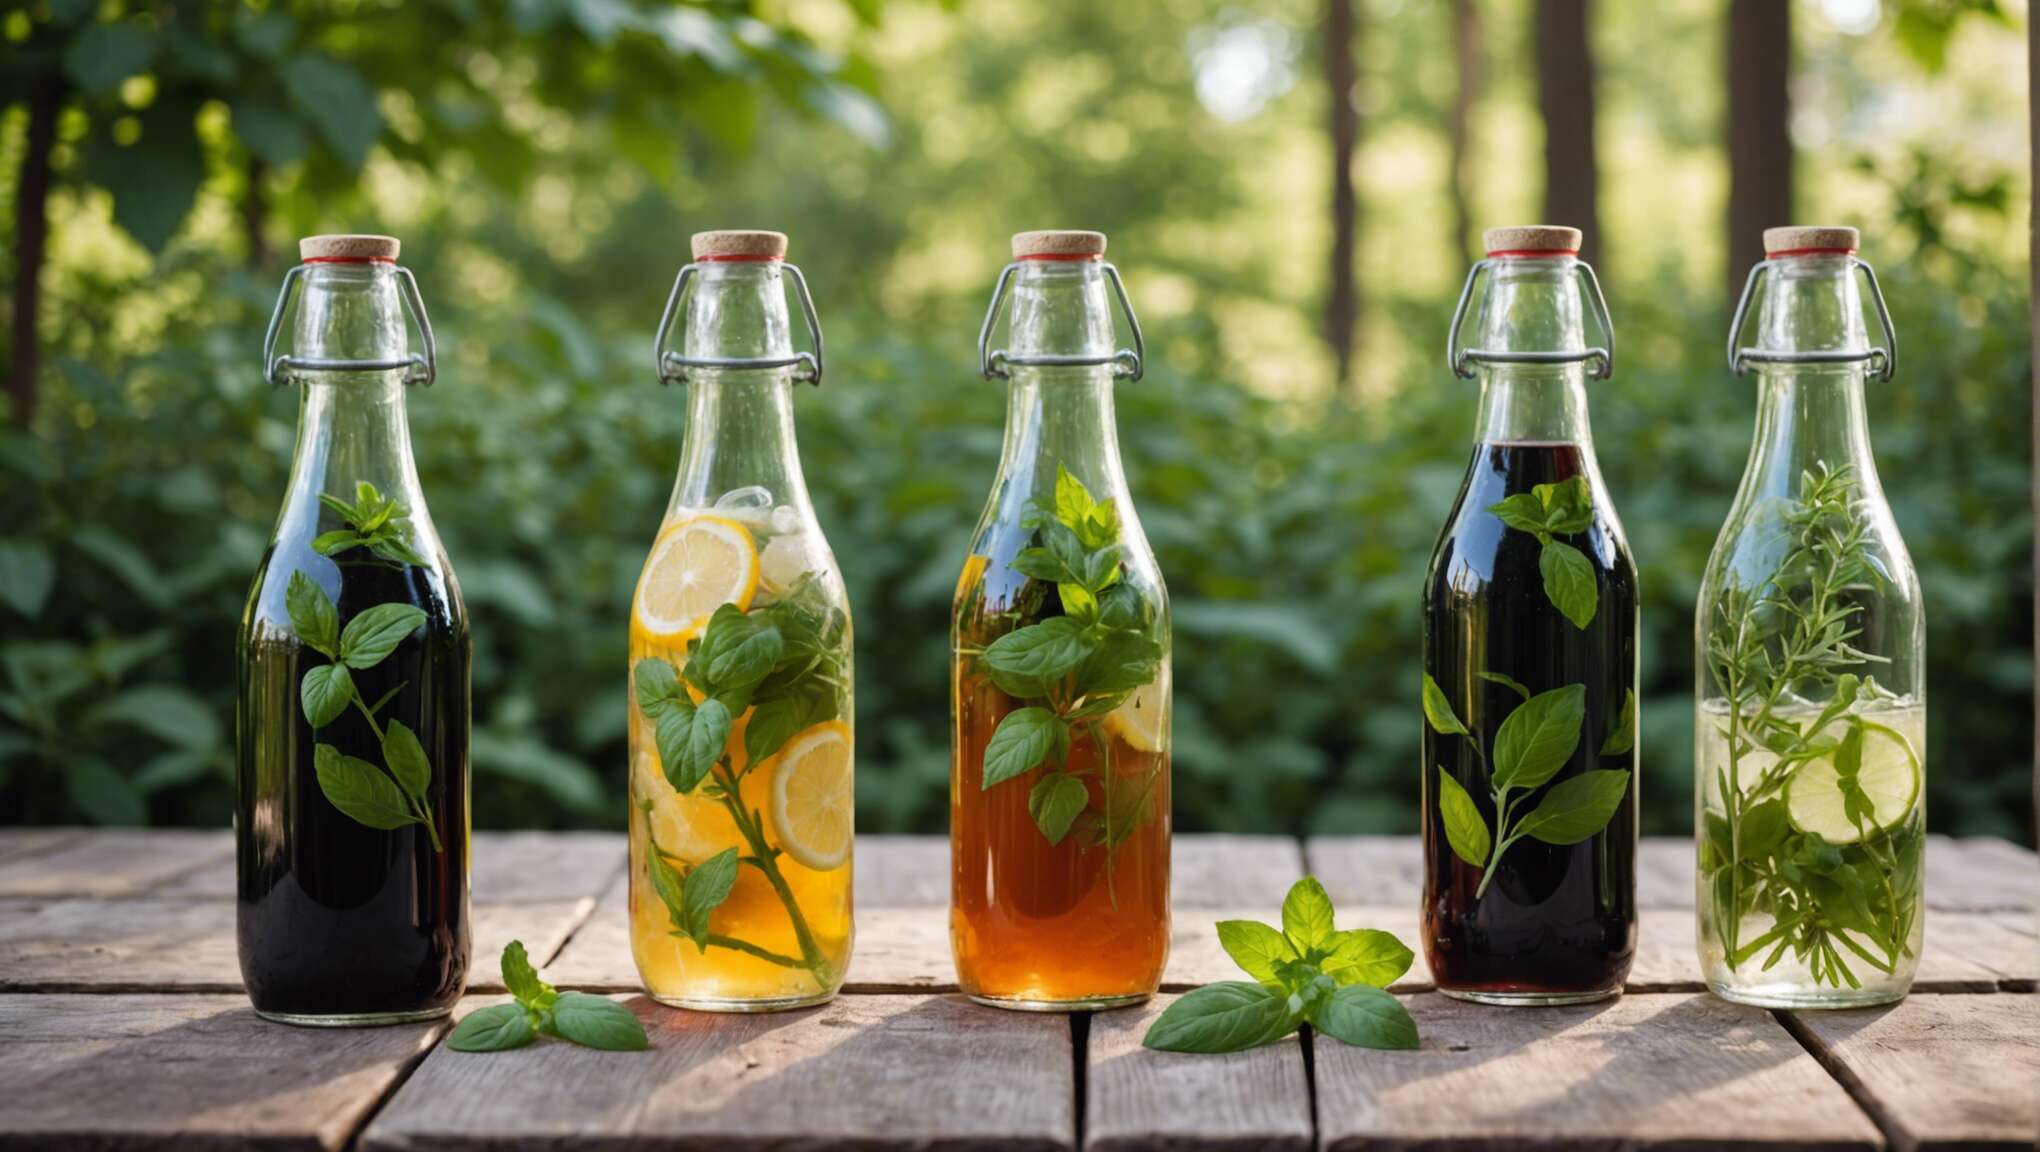 Comment personnaliser vos sodas maison avec des herbes aromatiques ?